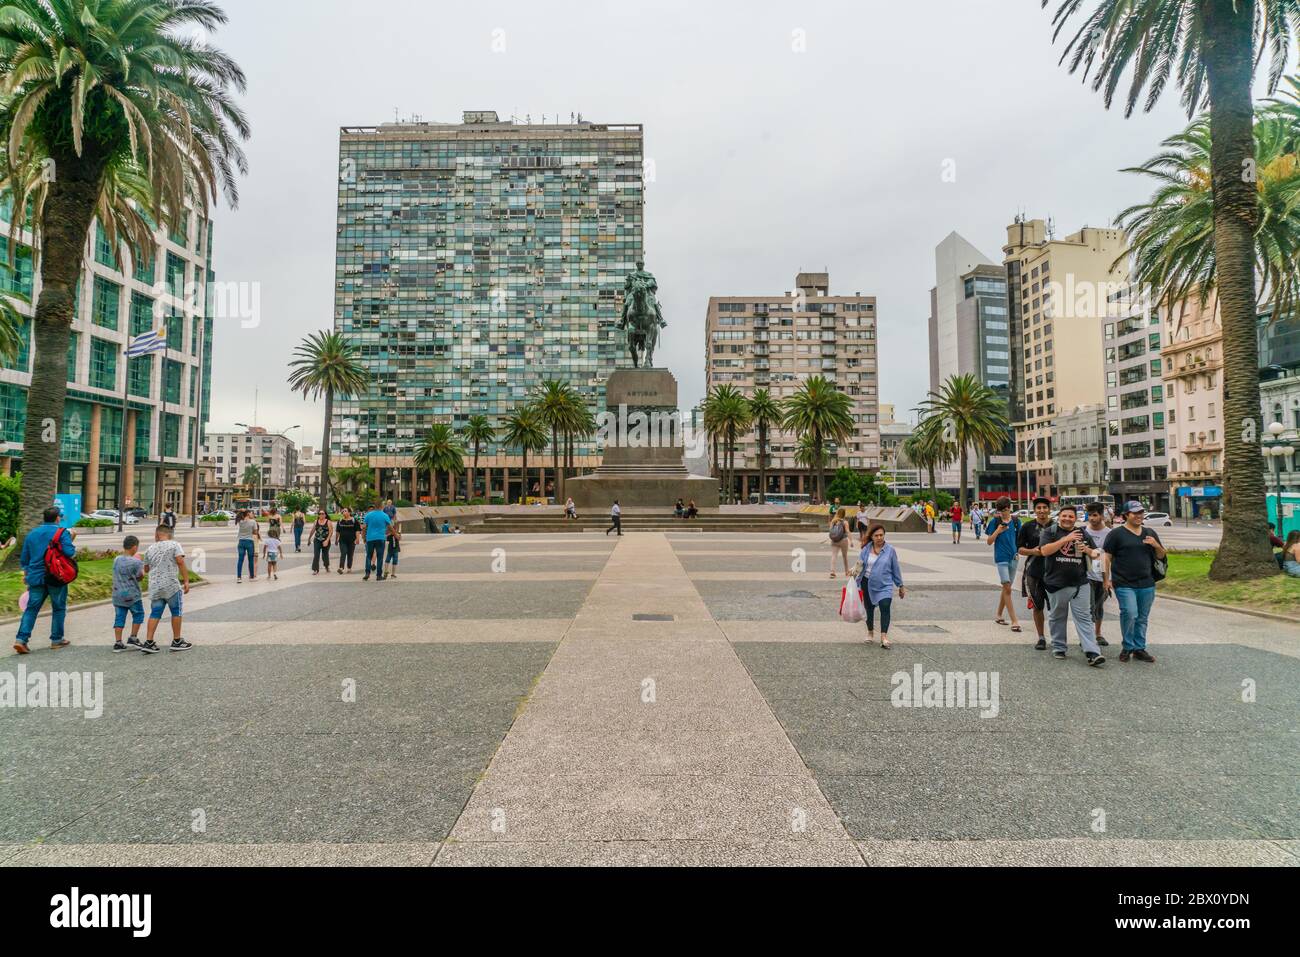 Touristes passant la statue du général Artigas sur la place de l'indépendance (Plaza Indepencia), Montevideo, Uruguay, 25 janvier 2019 Banque D'Images